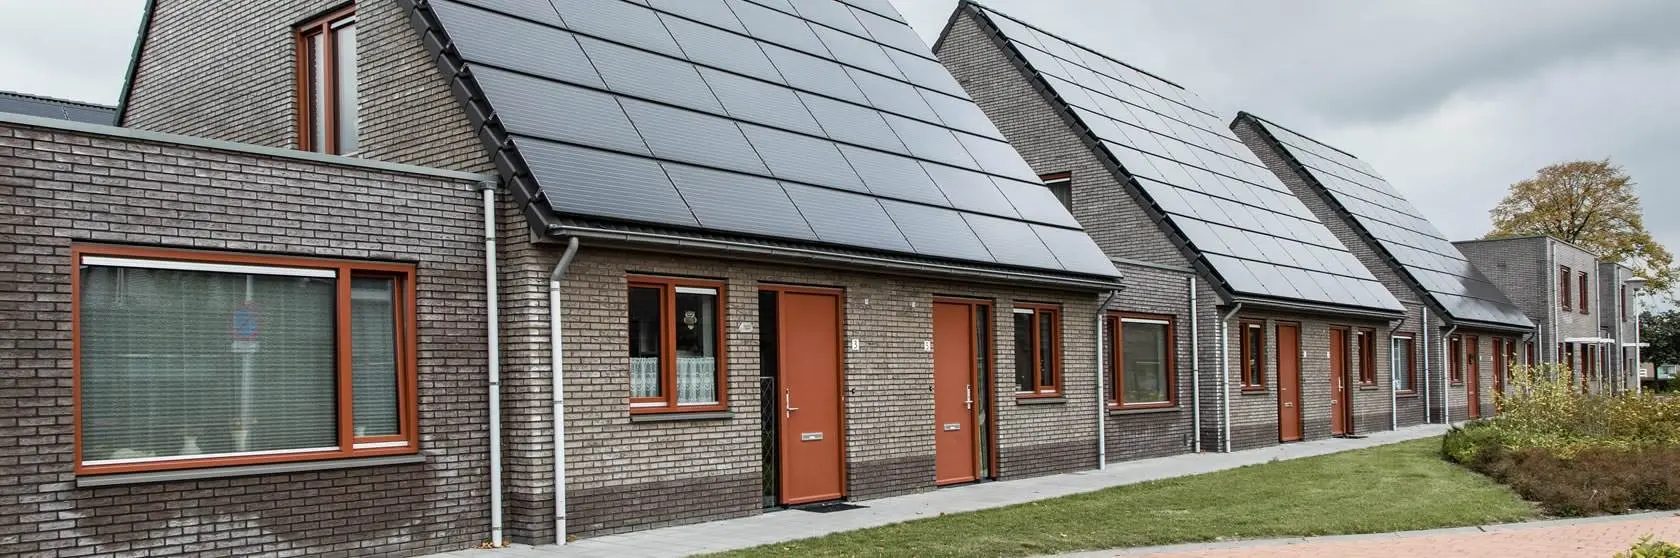 Duurzaamheidsconcepten van installatiebedrijf Mampaey actief in Rijswijk en omgeving